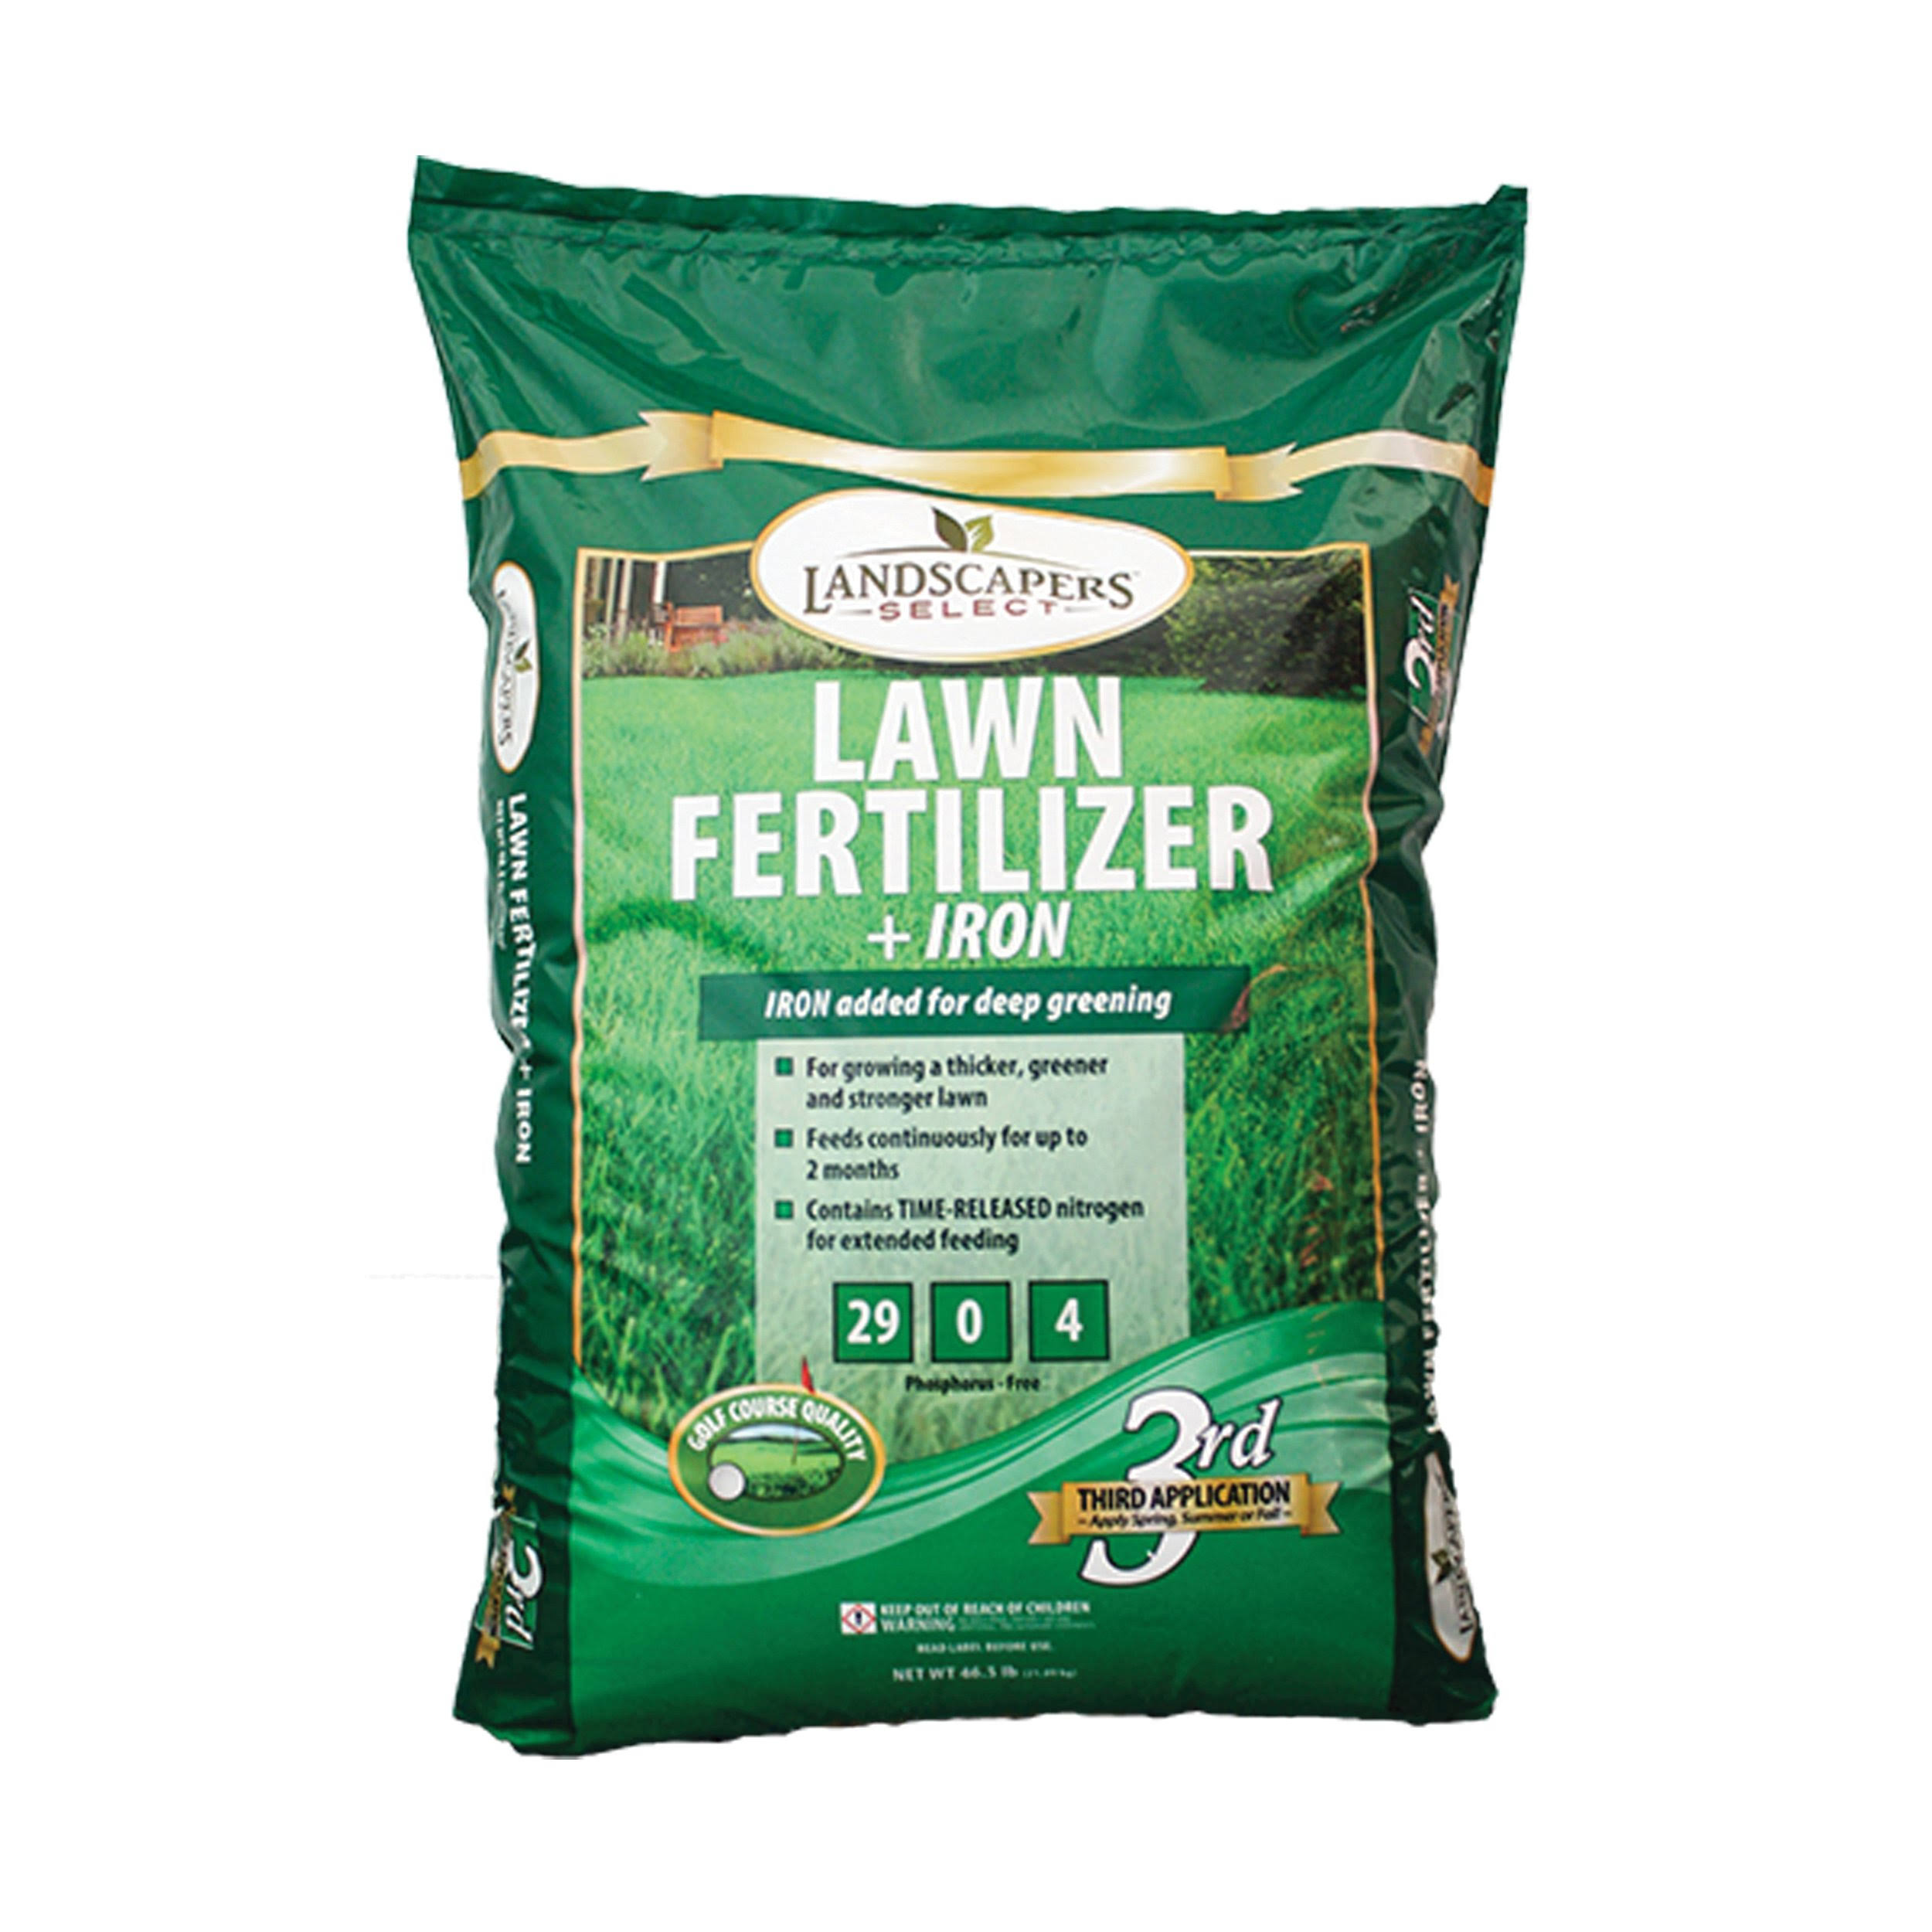 Landscapers Lawn Fertilizer